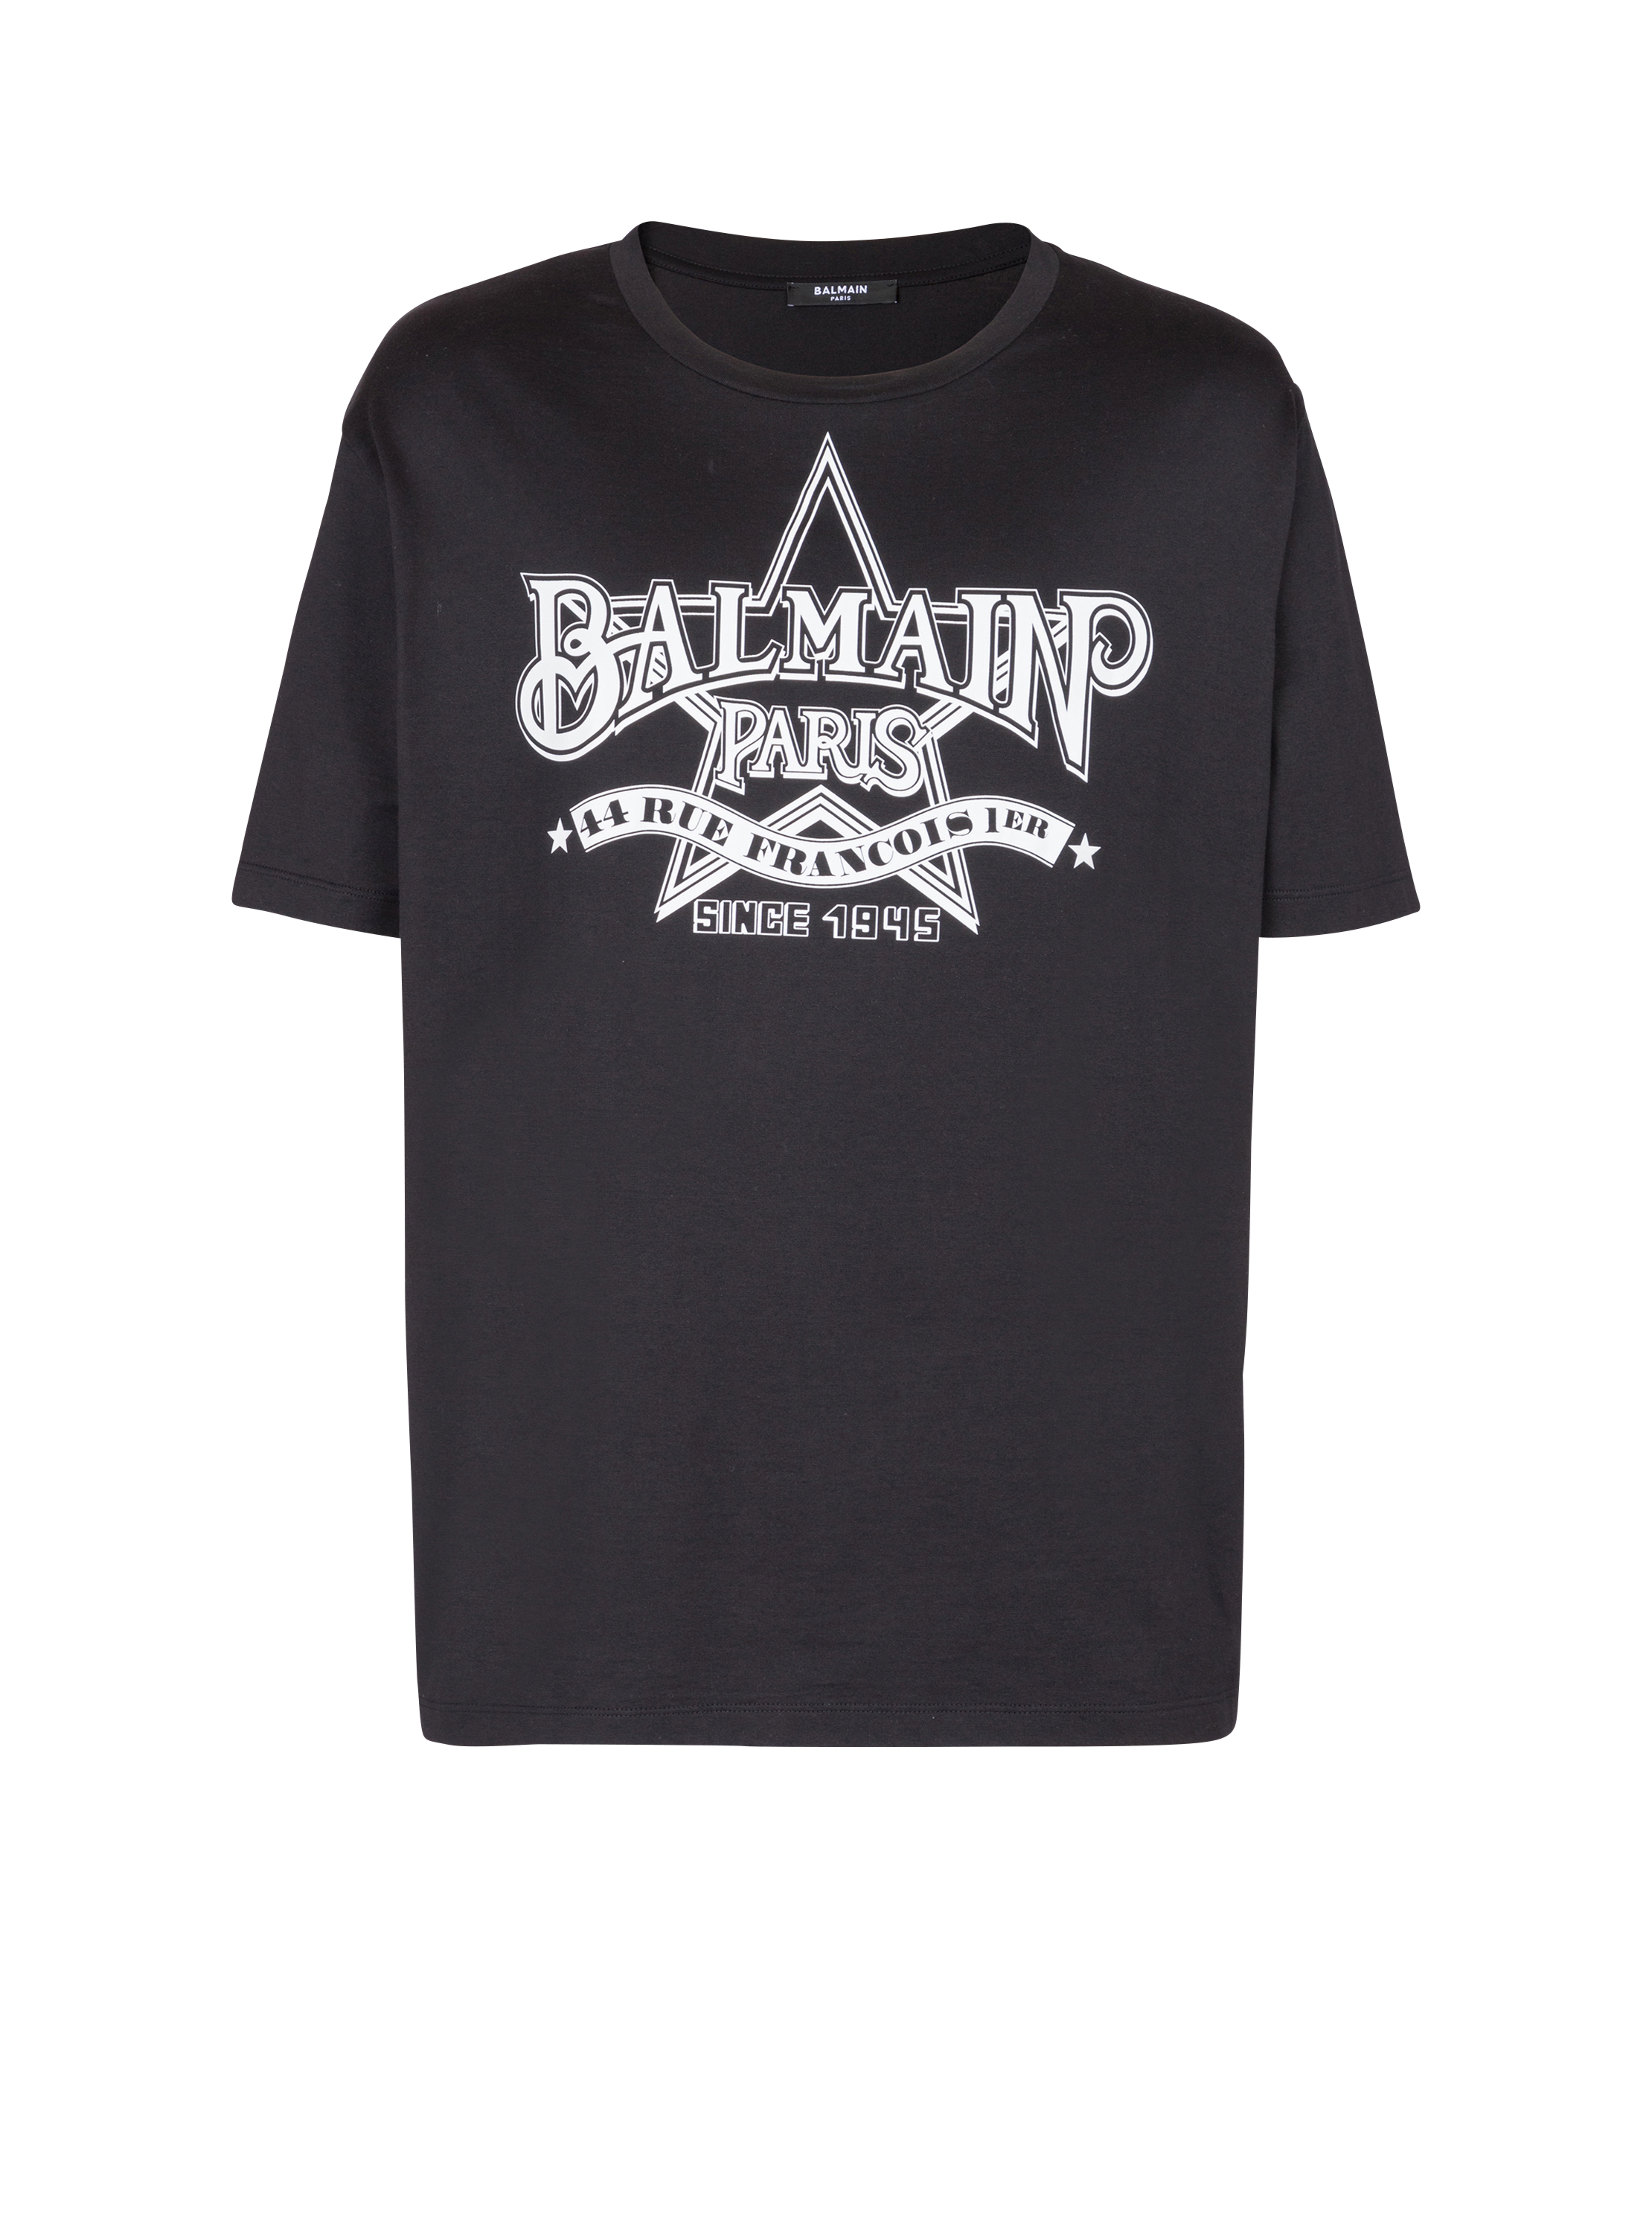 T-shirt Balmain Étoile